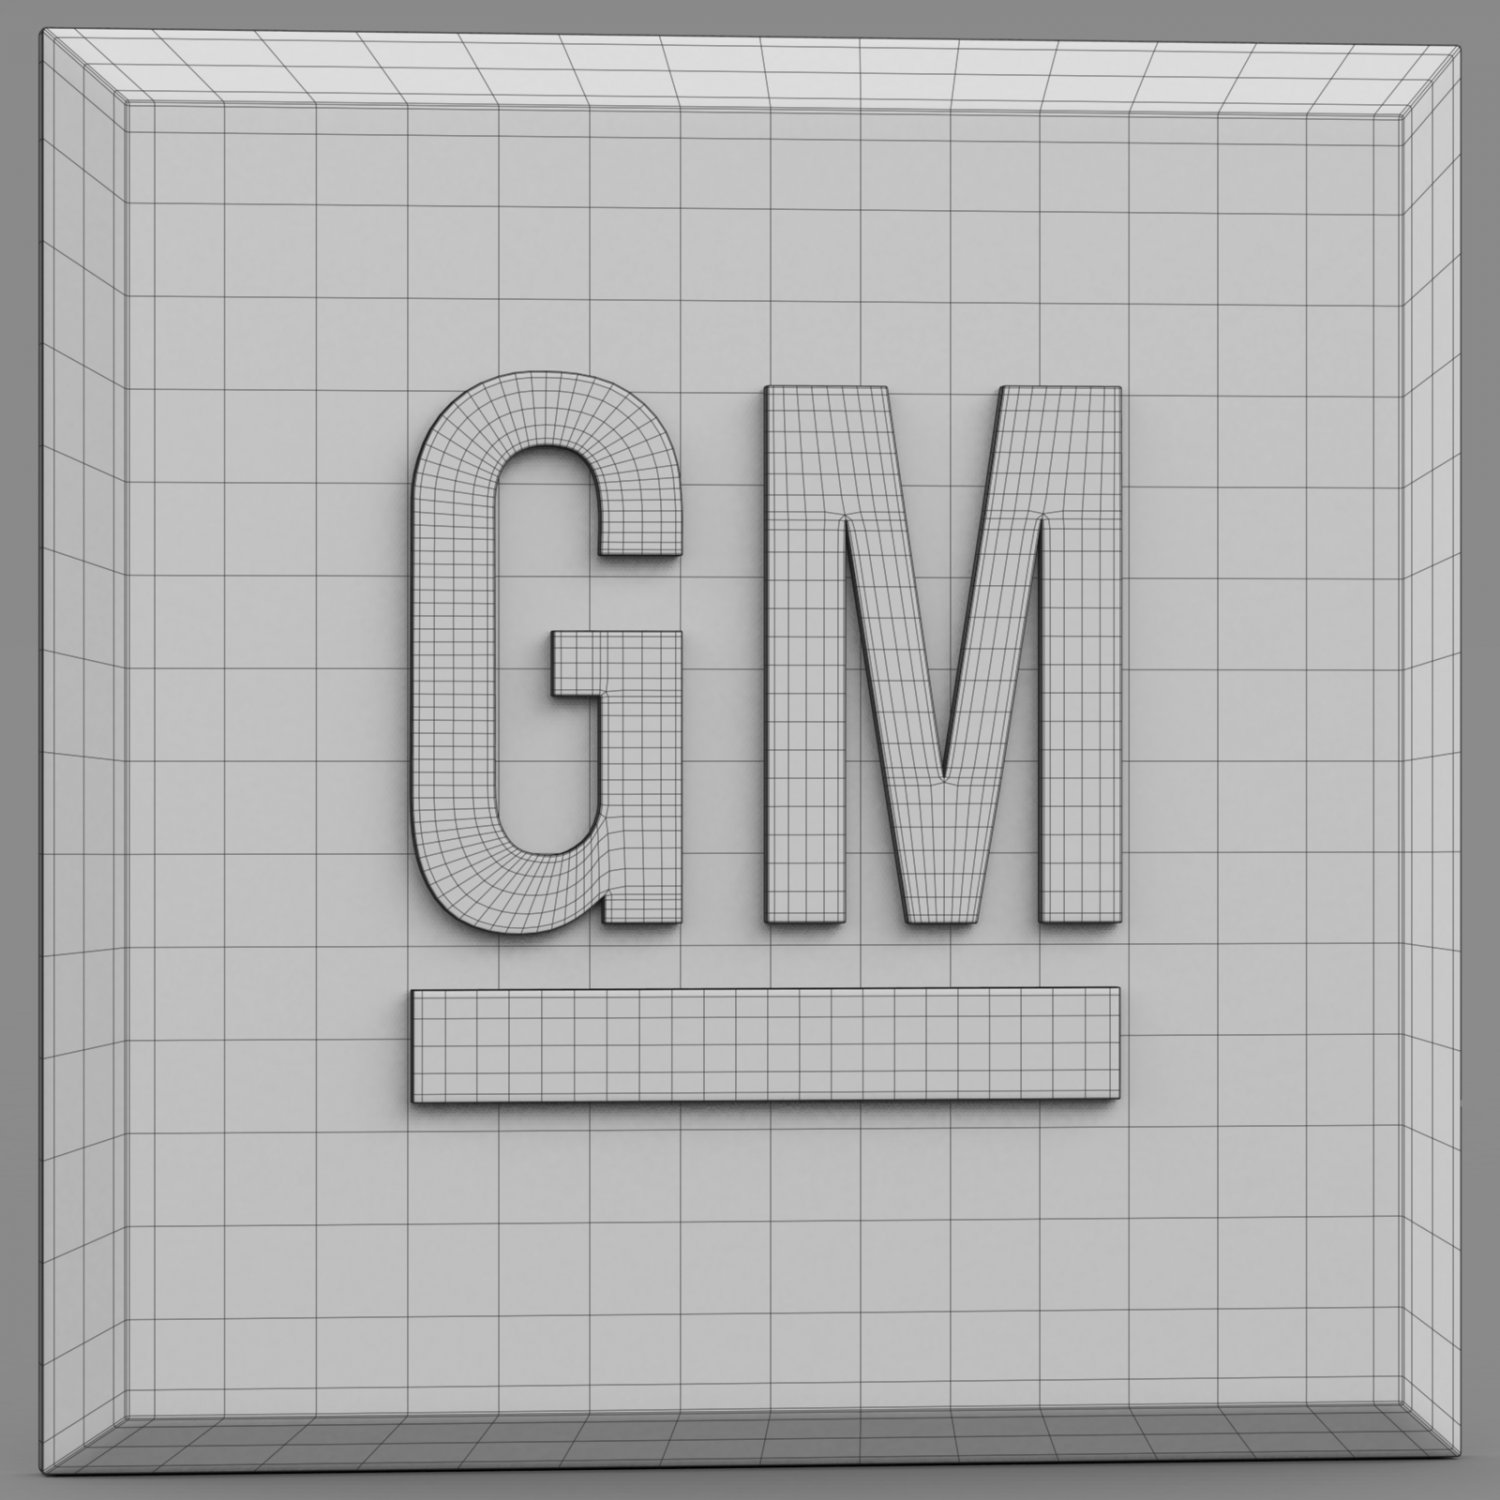 transparent gm logo